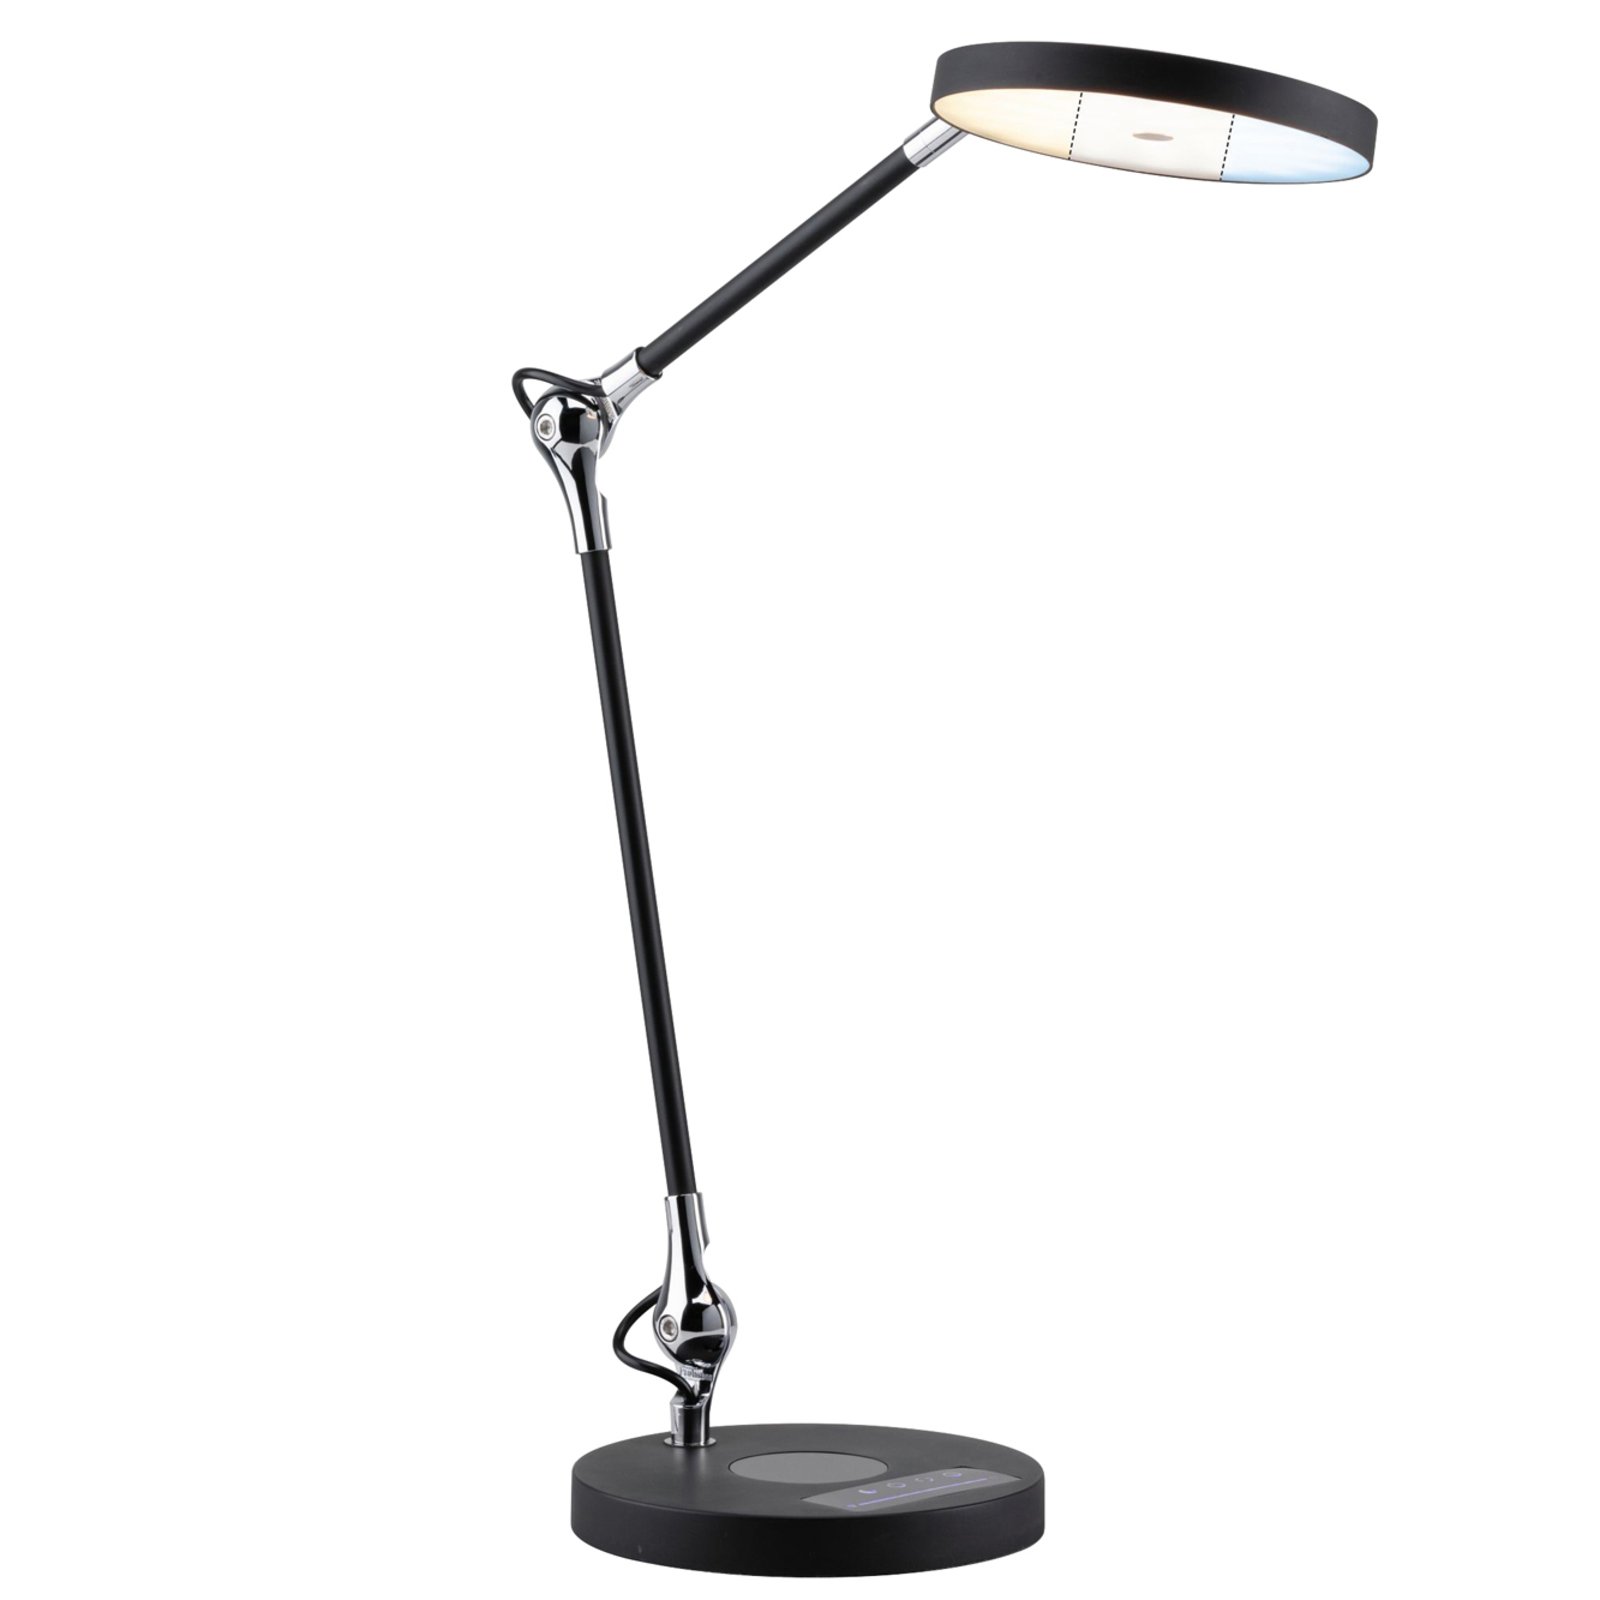 Tischlampe Leseleuchte Einfach Nachttischlampe Schlicht Schreibtischleuchte Weiß 